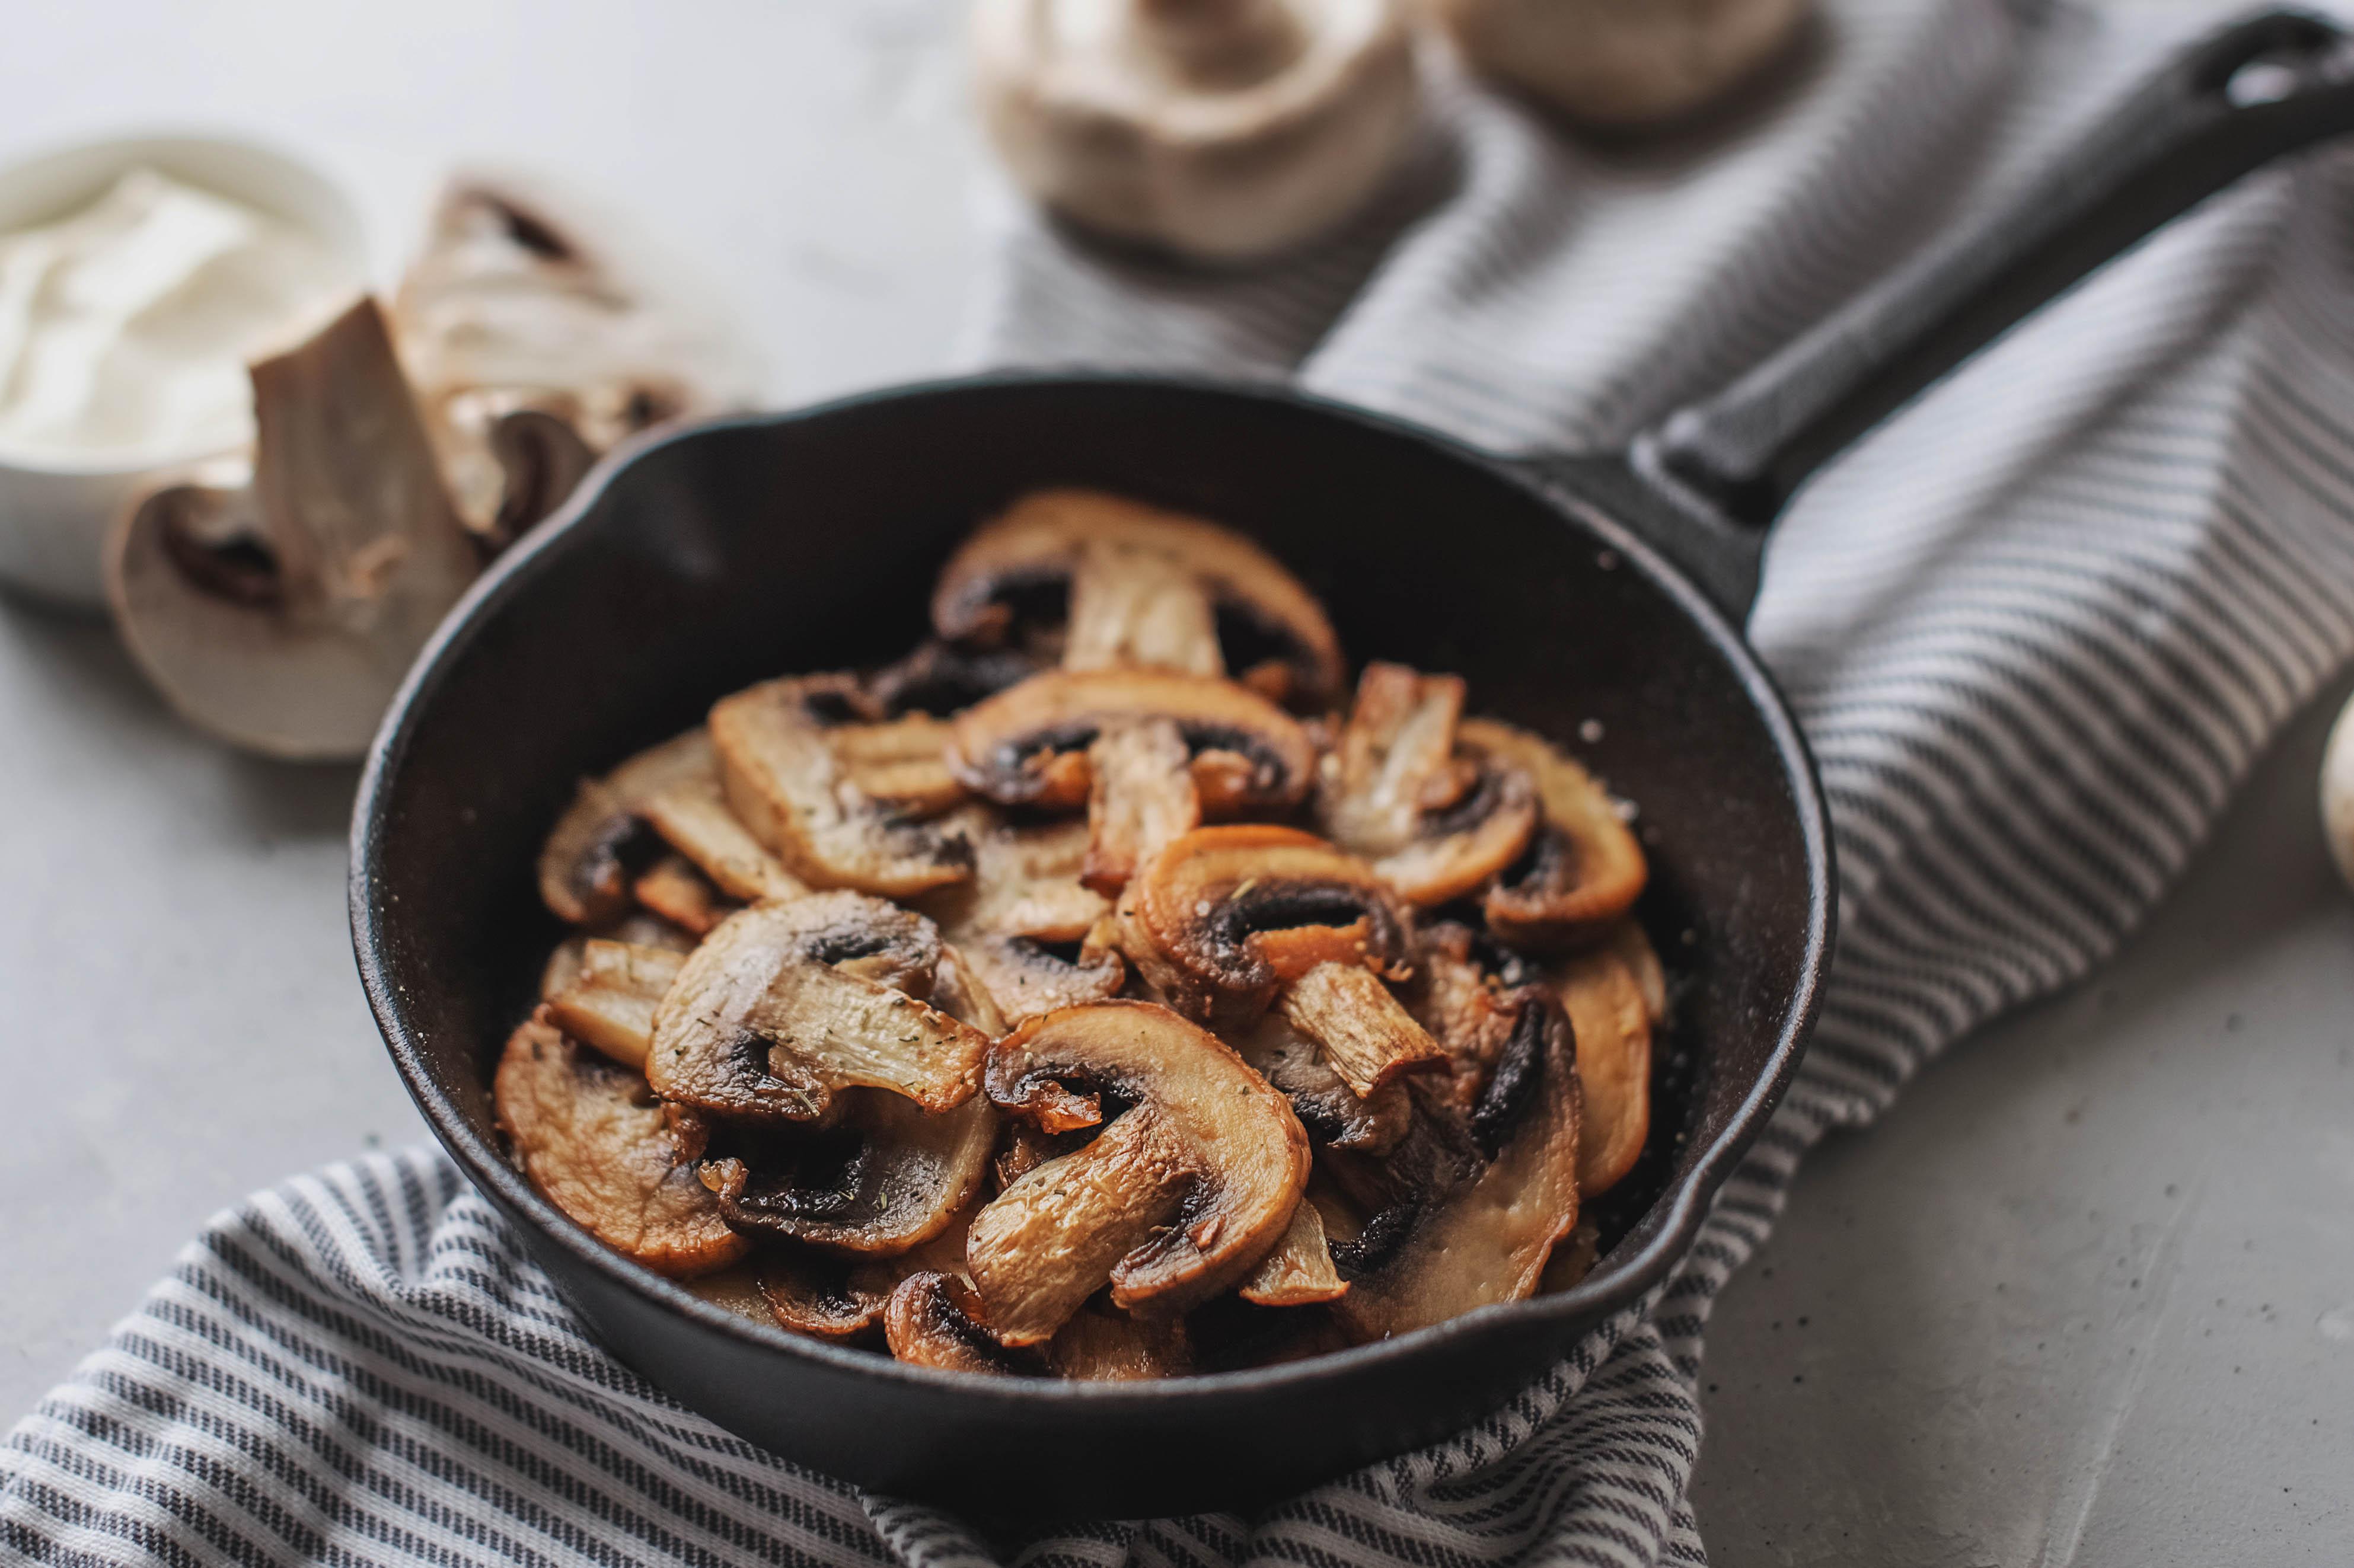 Cuisine Plaisir - Nettoyer un champignon : conseils, découpe et cuisson  idéales - Astuce culinaire